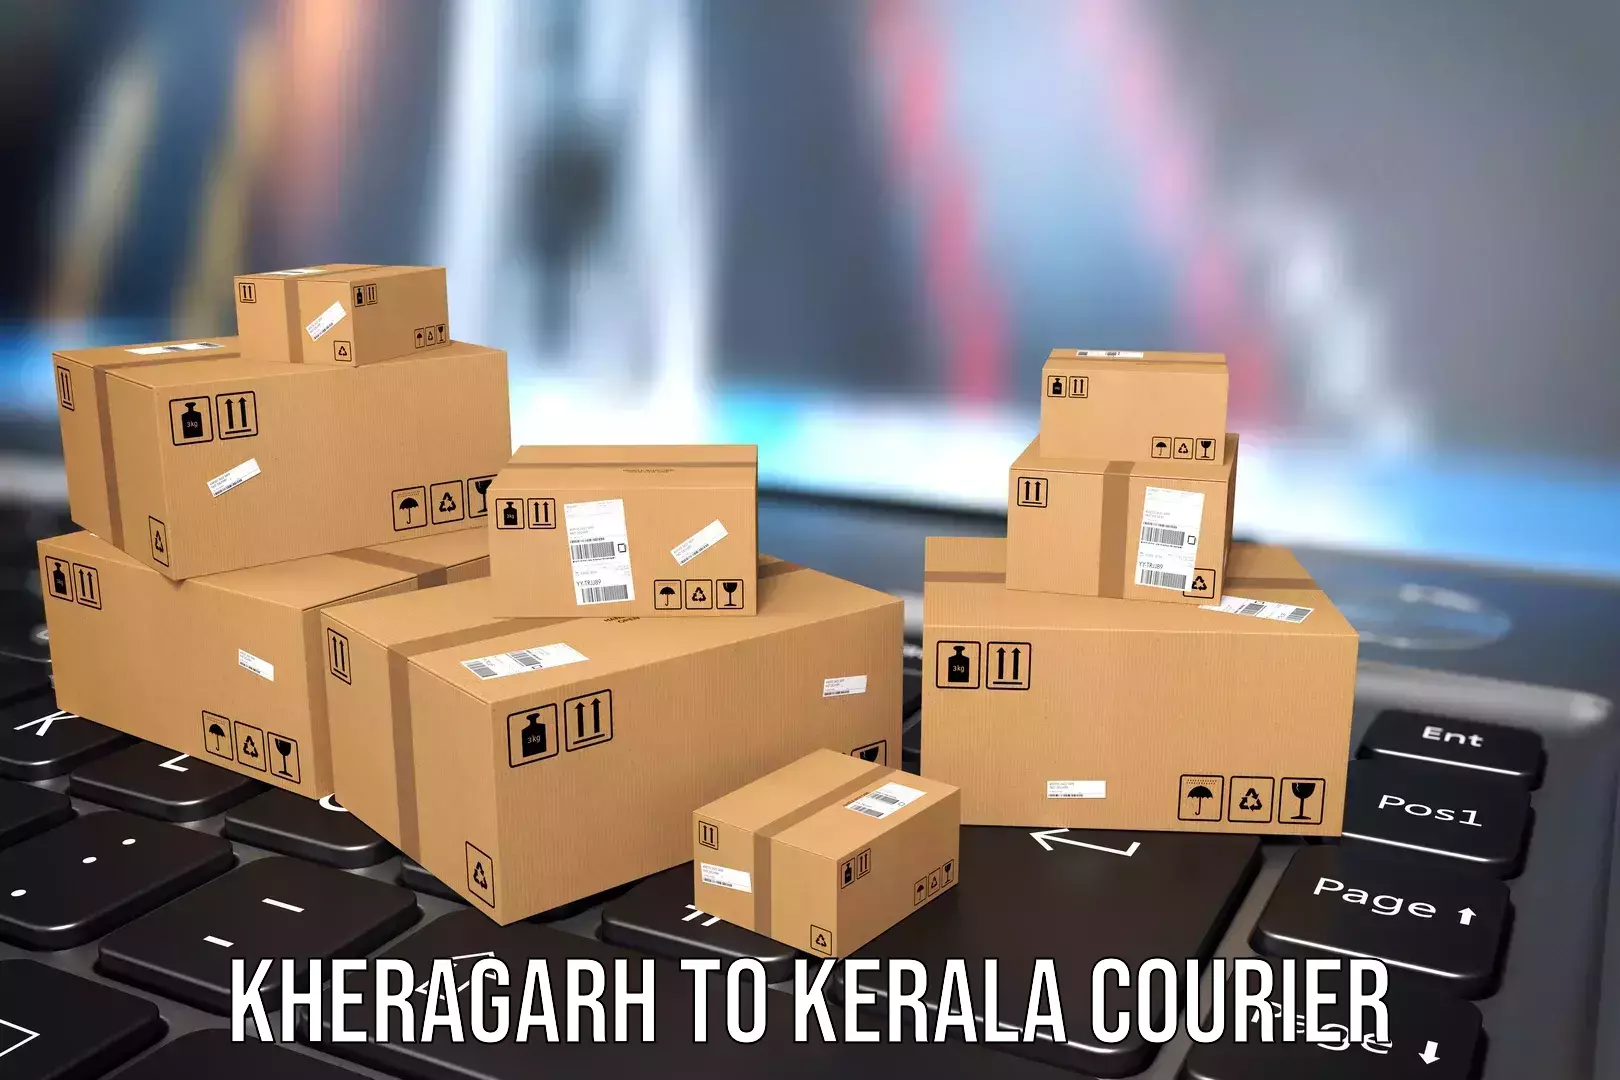 Baggage transport technology Kheragarh to Kerala